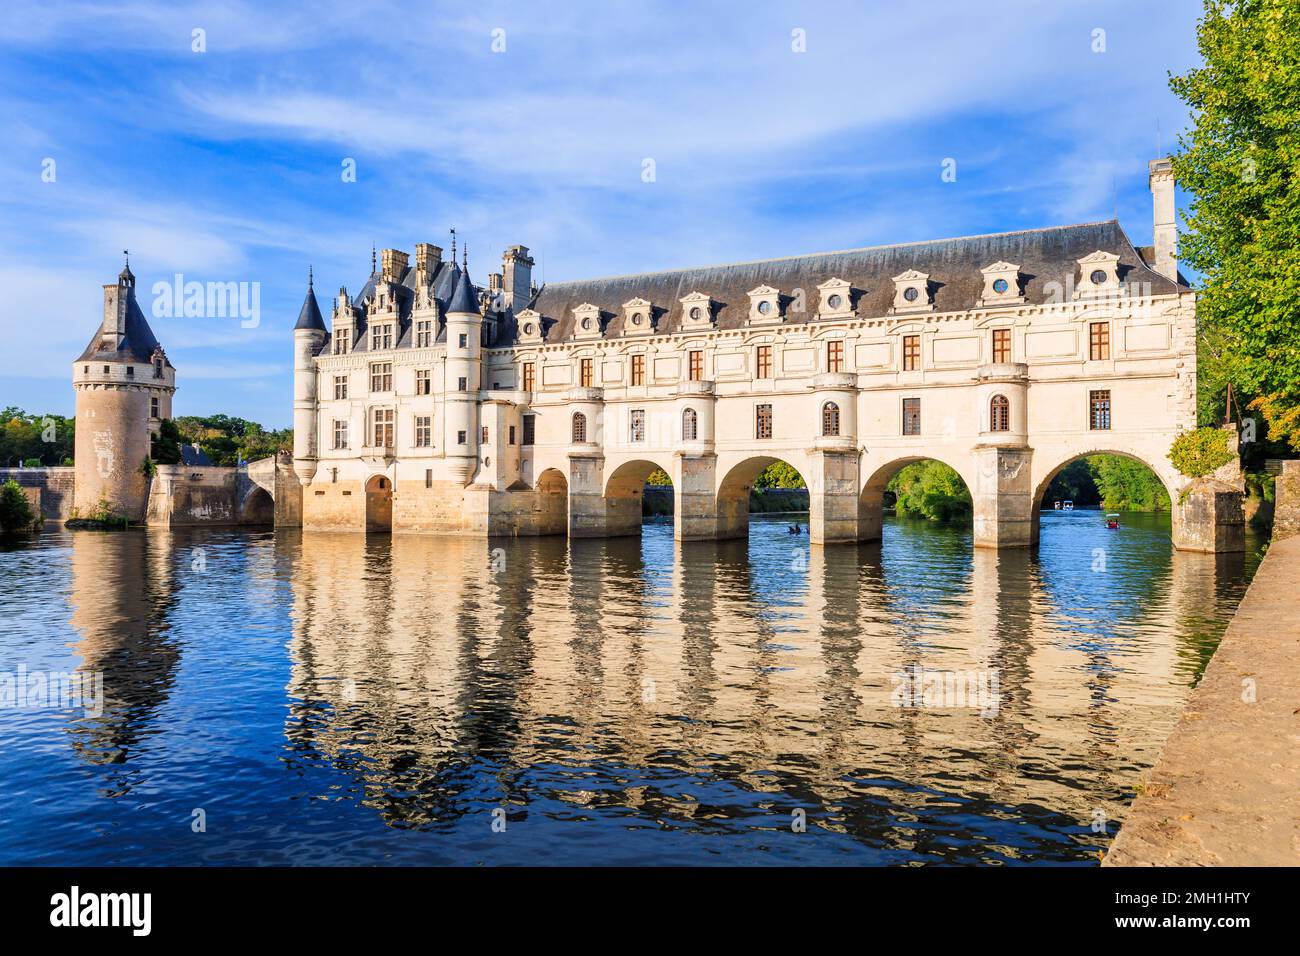 Vallée de la Loire, France. Vue sur le château de Chenonceau, le château gothique et le château Renaissance. Banque D'Images